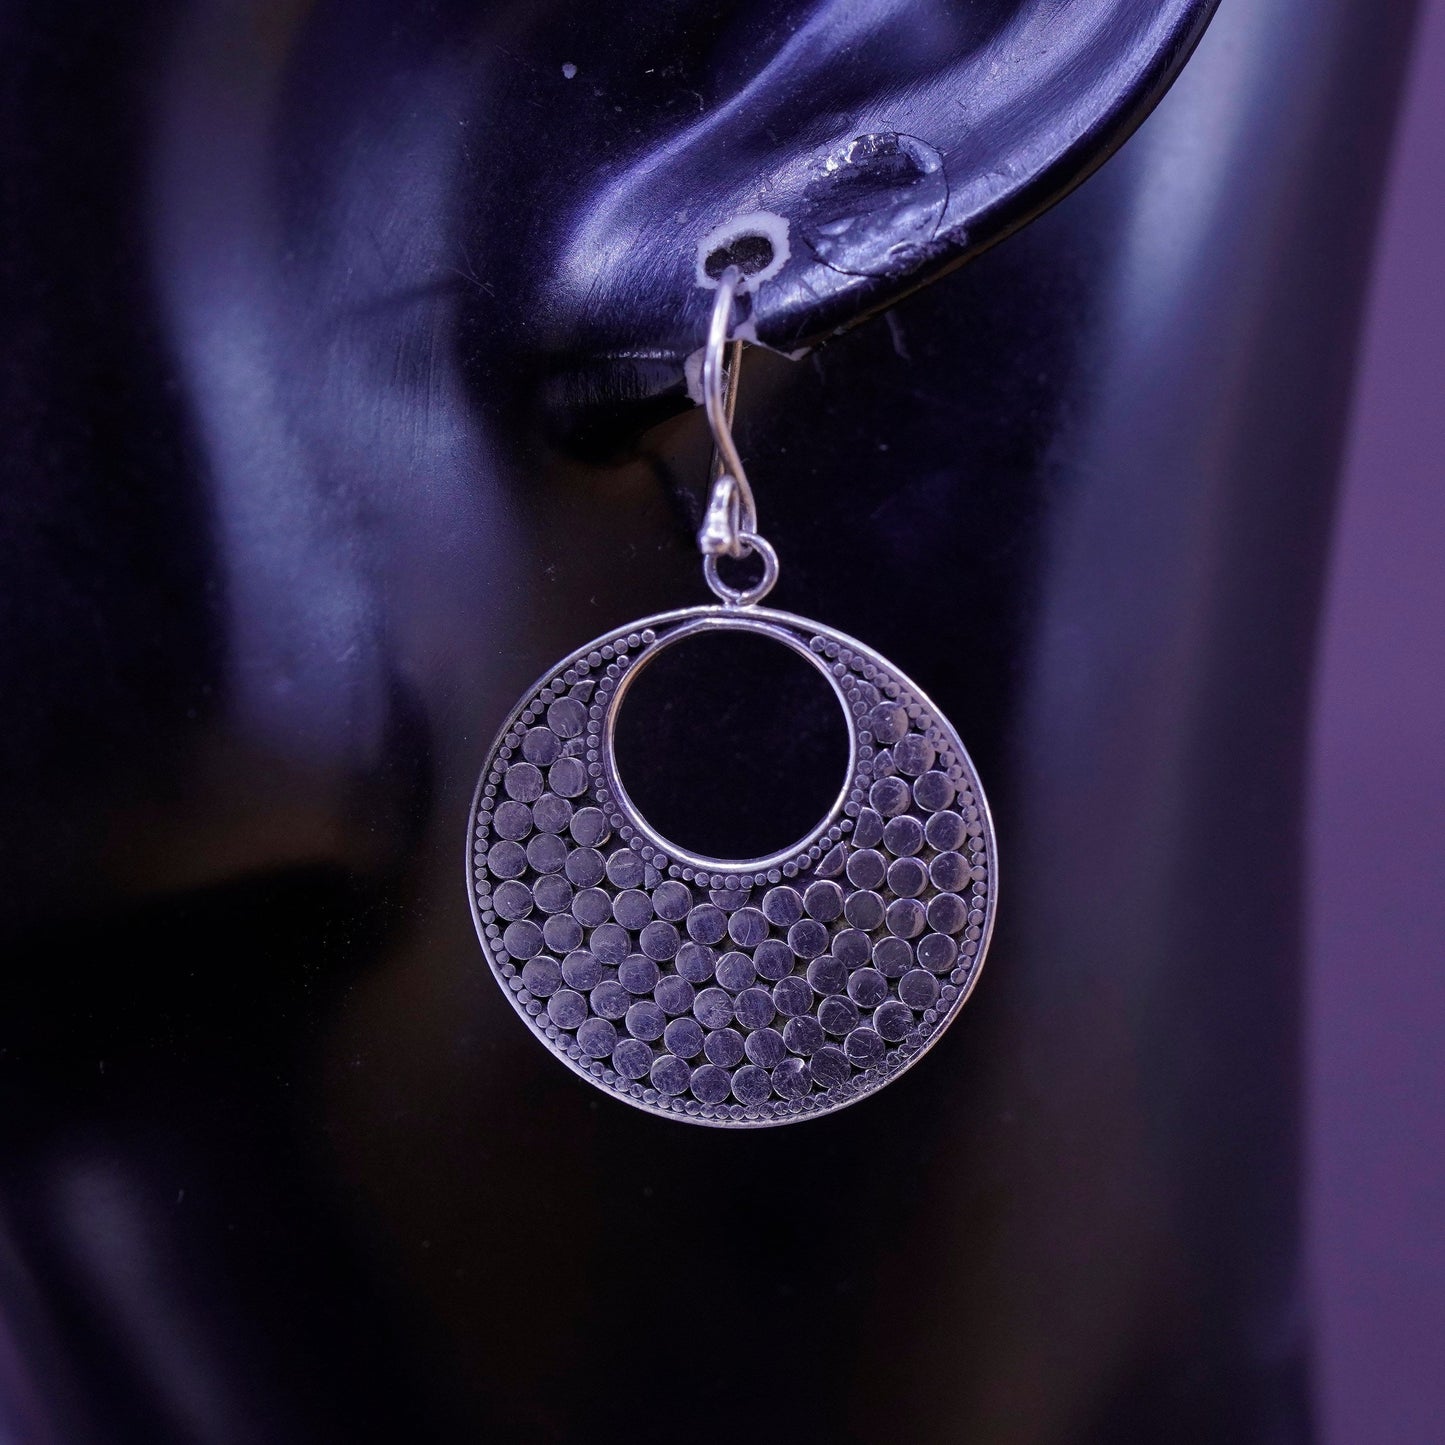 Vintage Sterling silver handmade earrings, 925 bead textured disc